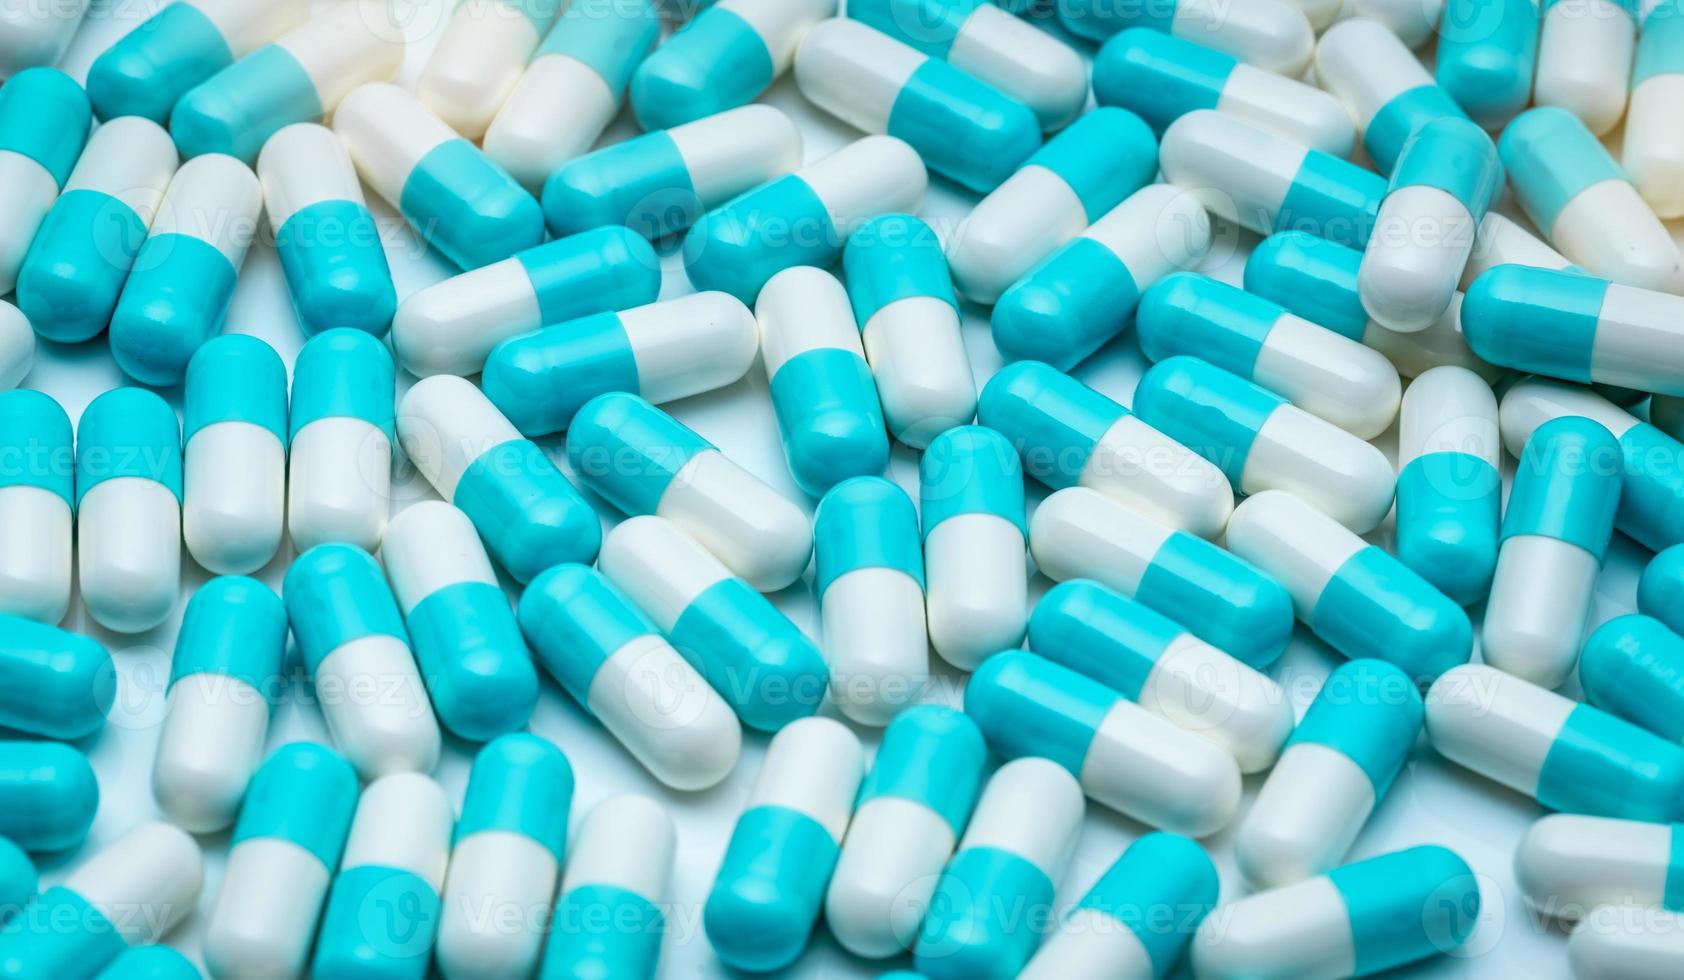 cadre complet de pilules de capsules antibiotiques. fond de texture de pilules de capsule antibiotique bleu-blanc. industrie pharmaceutique. toile de fond de la santé et de la médecine. résistance aux antibiotiques et superbactérie. photo